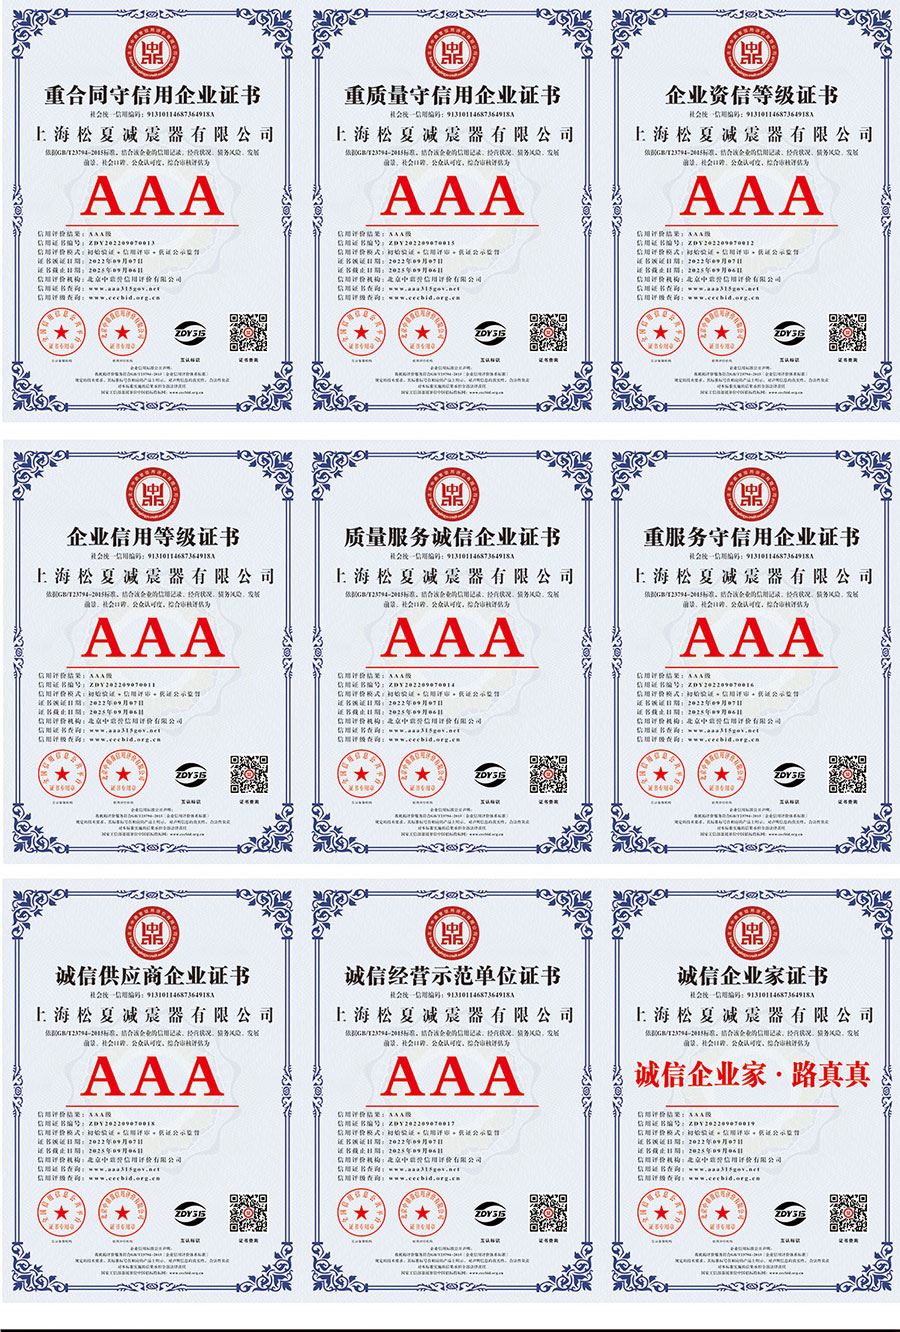 上海博游棋牌减震器有限公司顺达娱乐注册开户